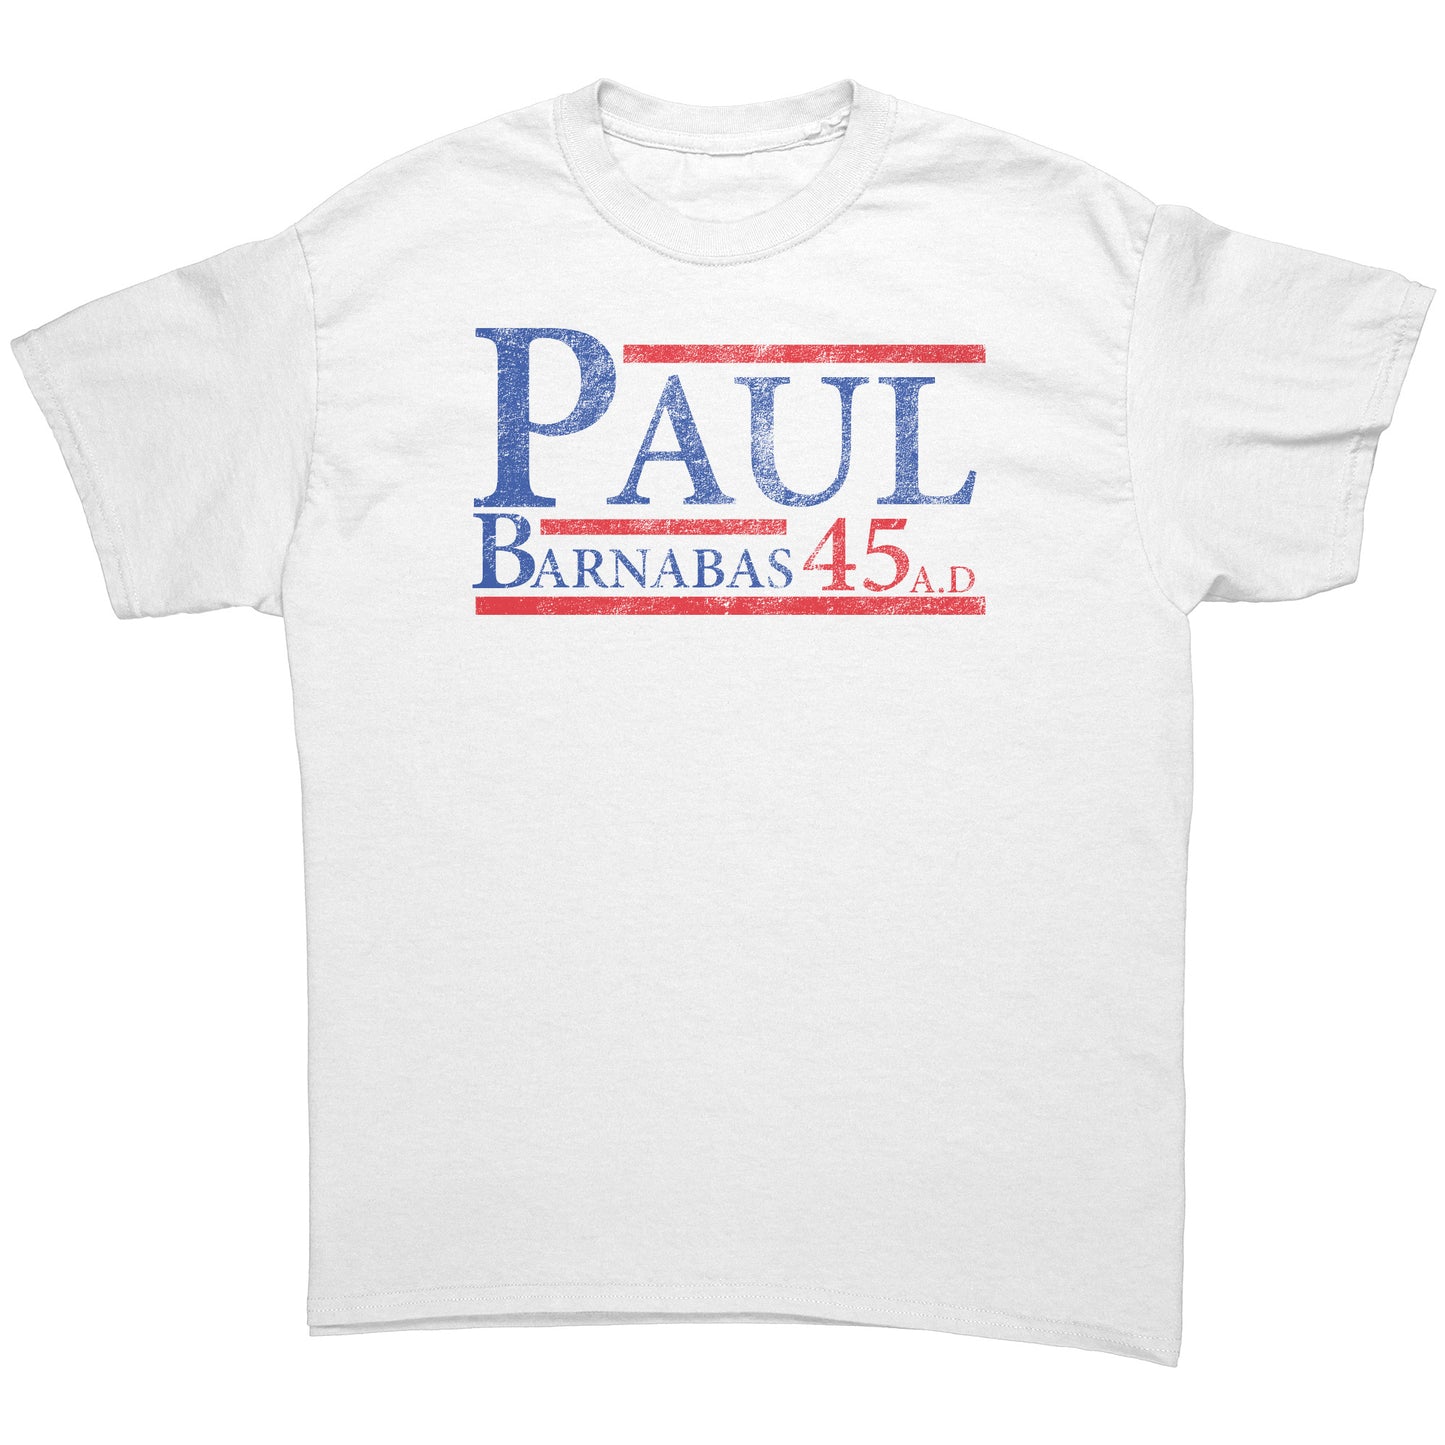 Paul/Barnabas 45A.D Men's T-Shirt